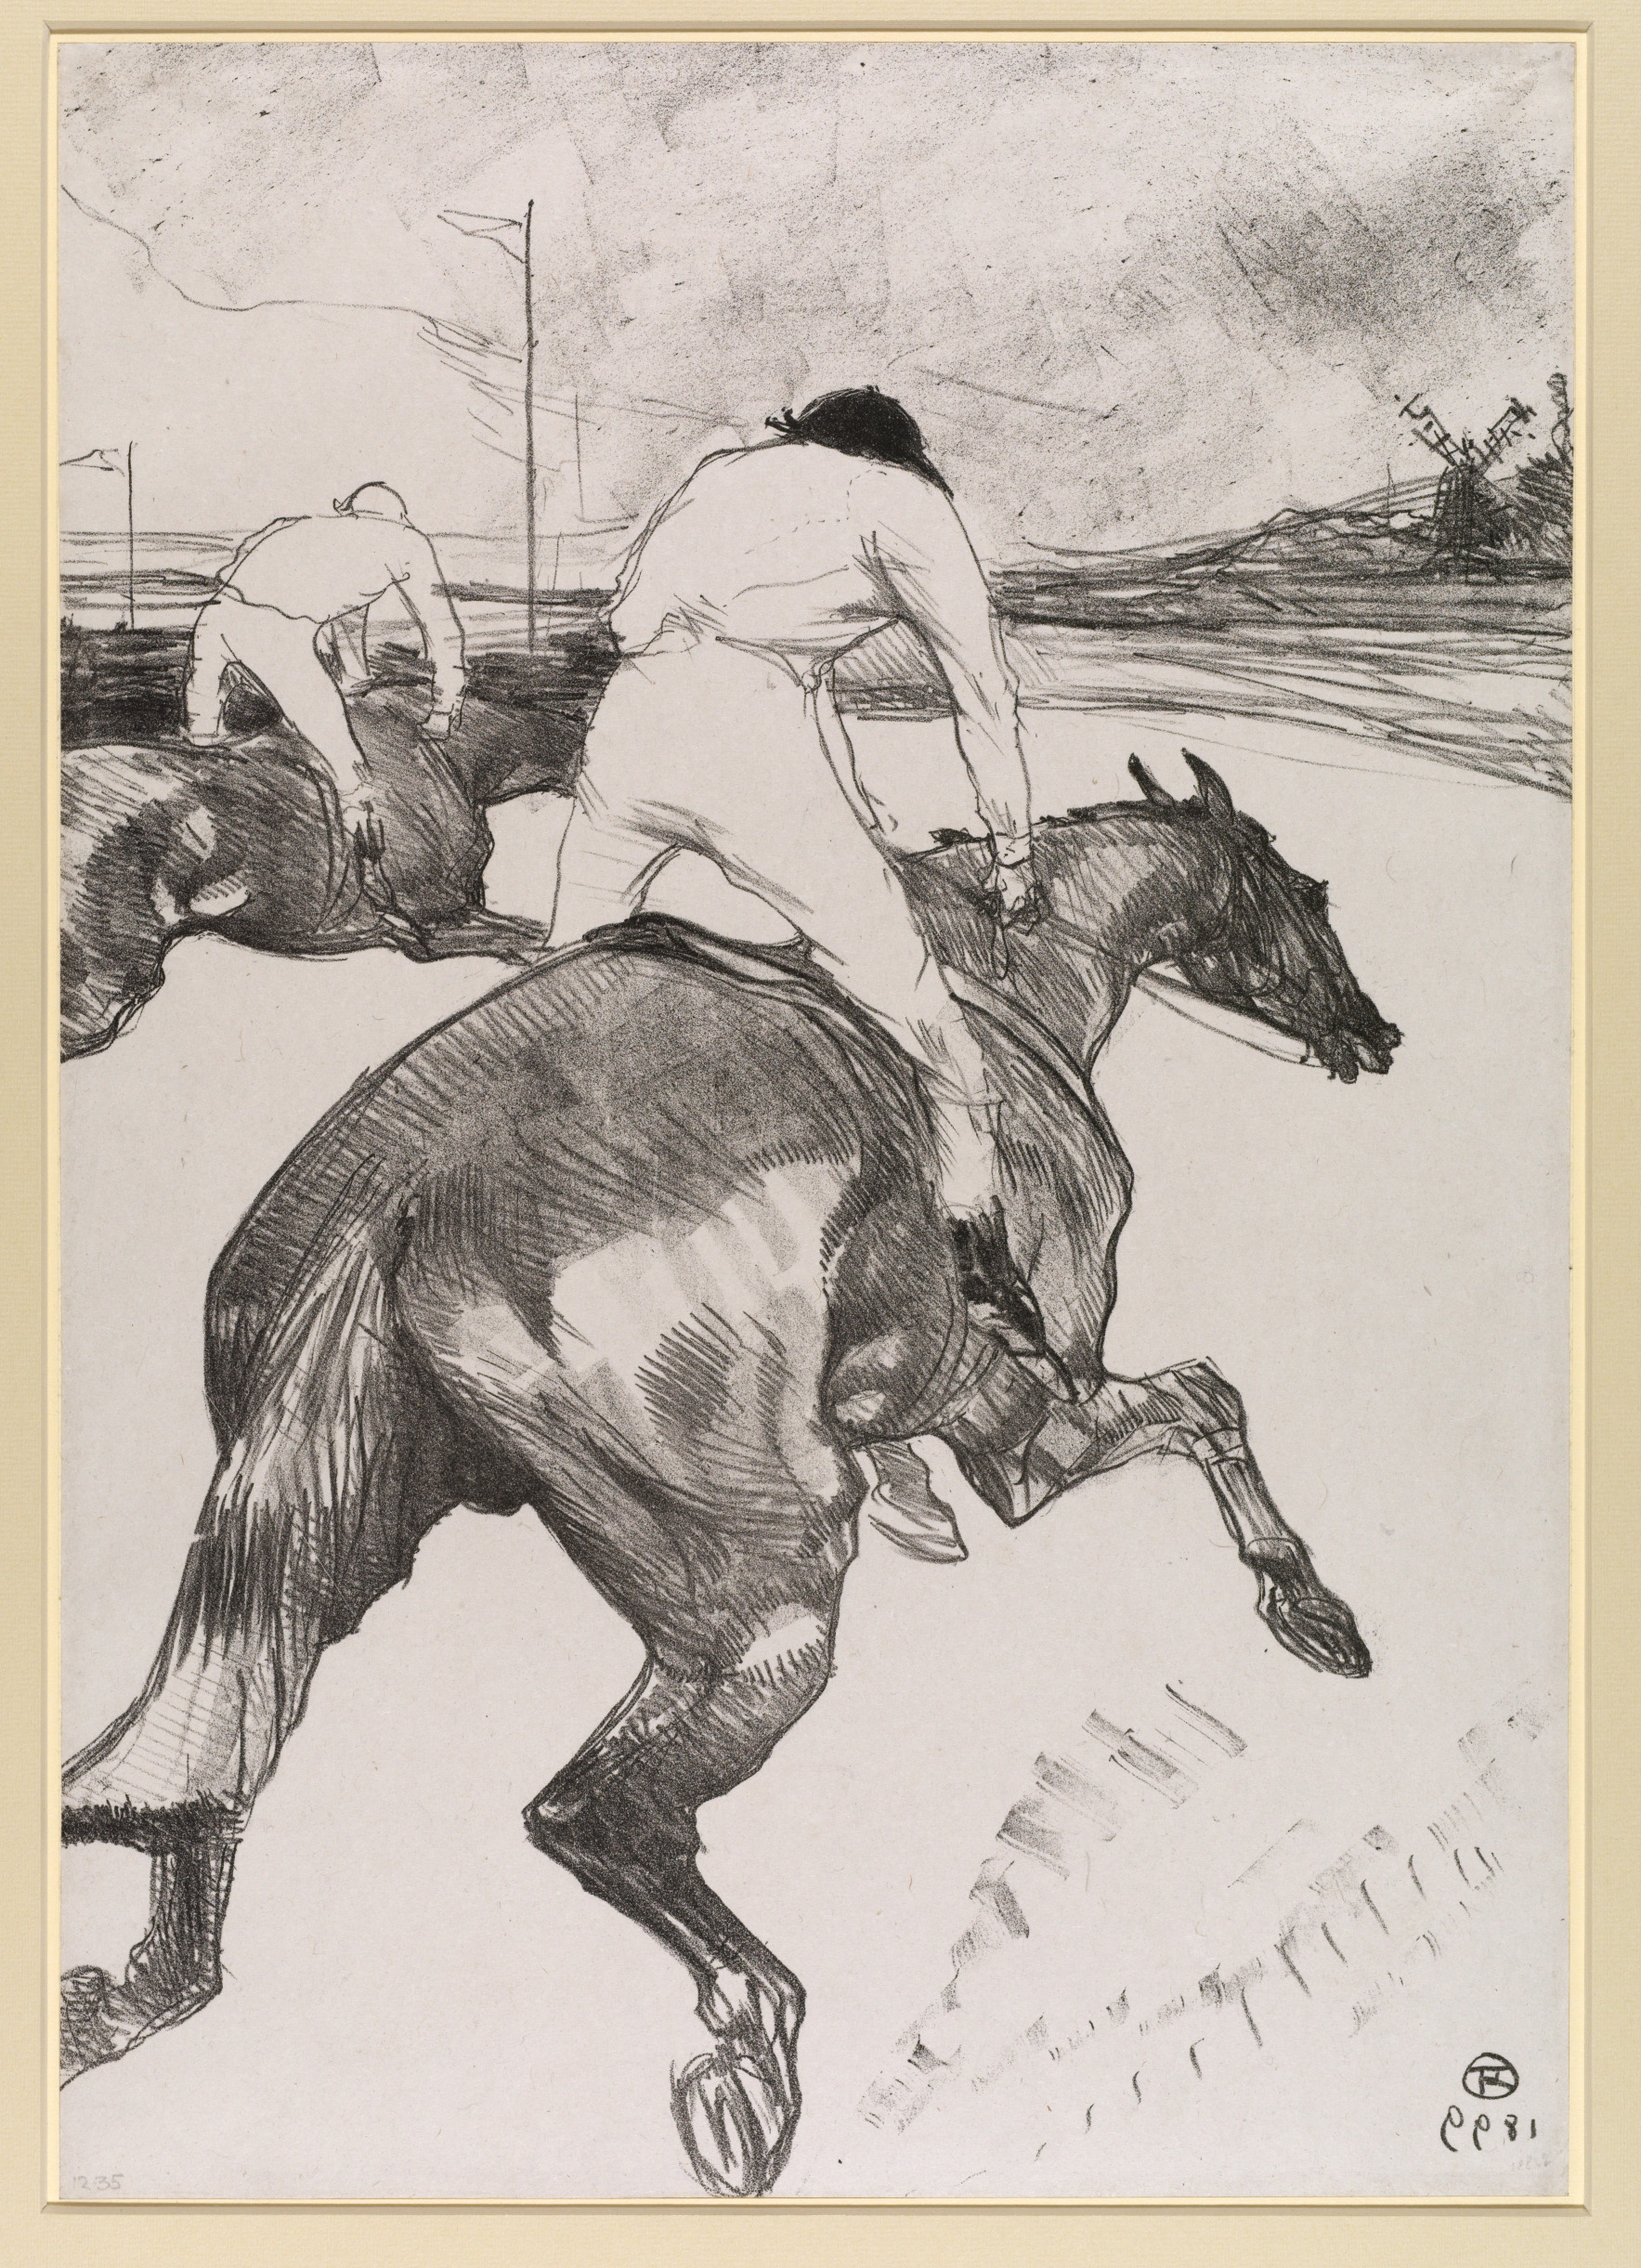 Henri de Toulouse-Lautrec (1864-1901), The Jockey, 1899, Lithograph, 51.6 x 36.3 cm, The Courtauld Gallery, London